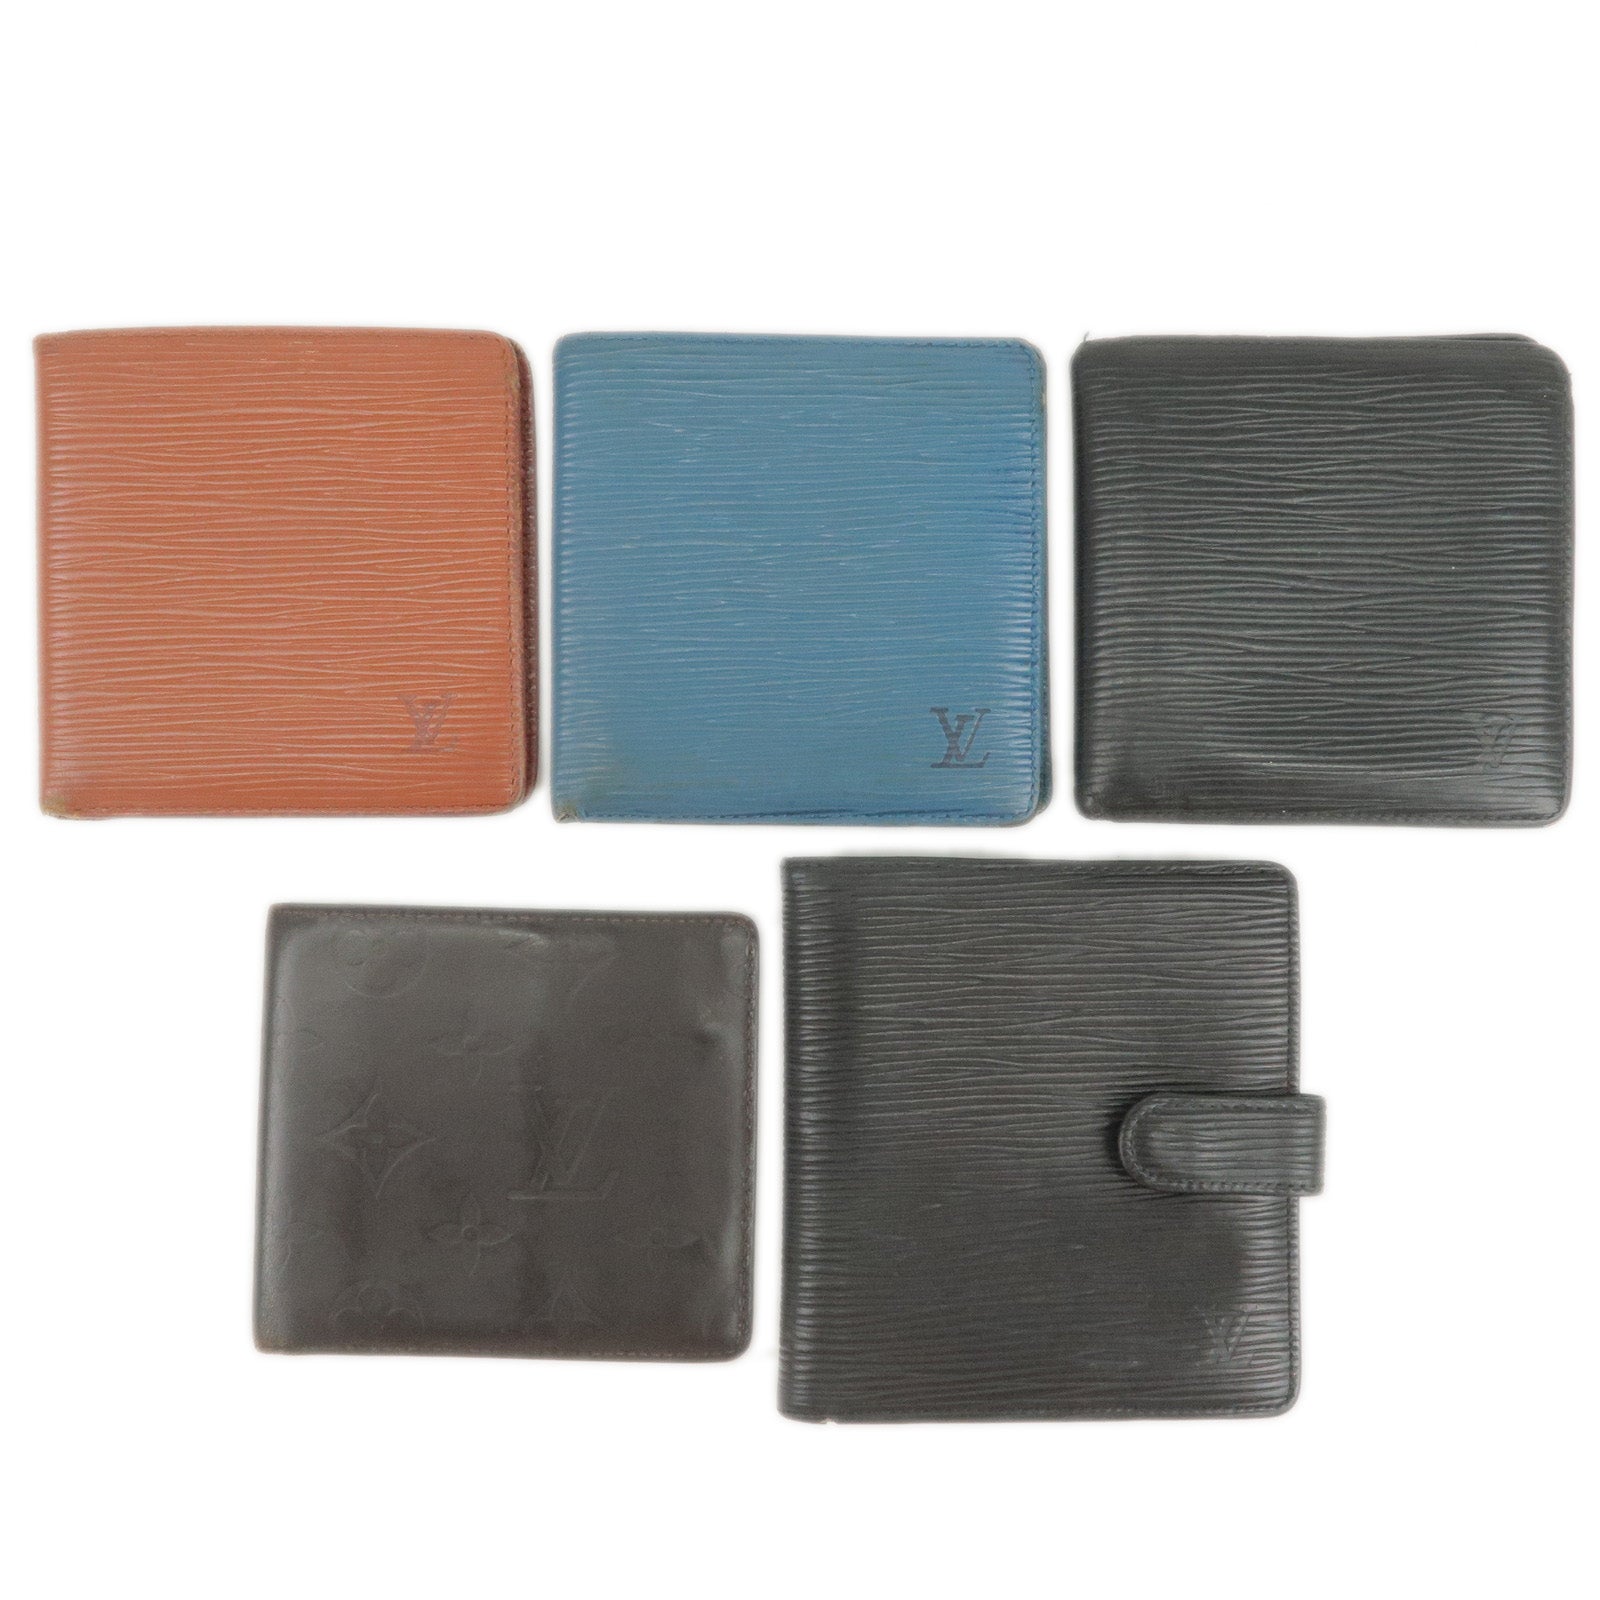 Louis-Vuitton-Epi-Leather-Set-of-5-Wallets-Bi-Fold-Wallets